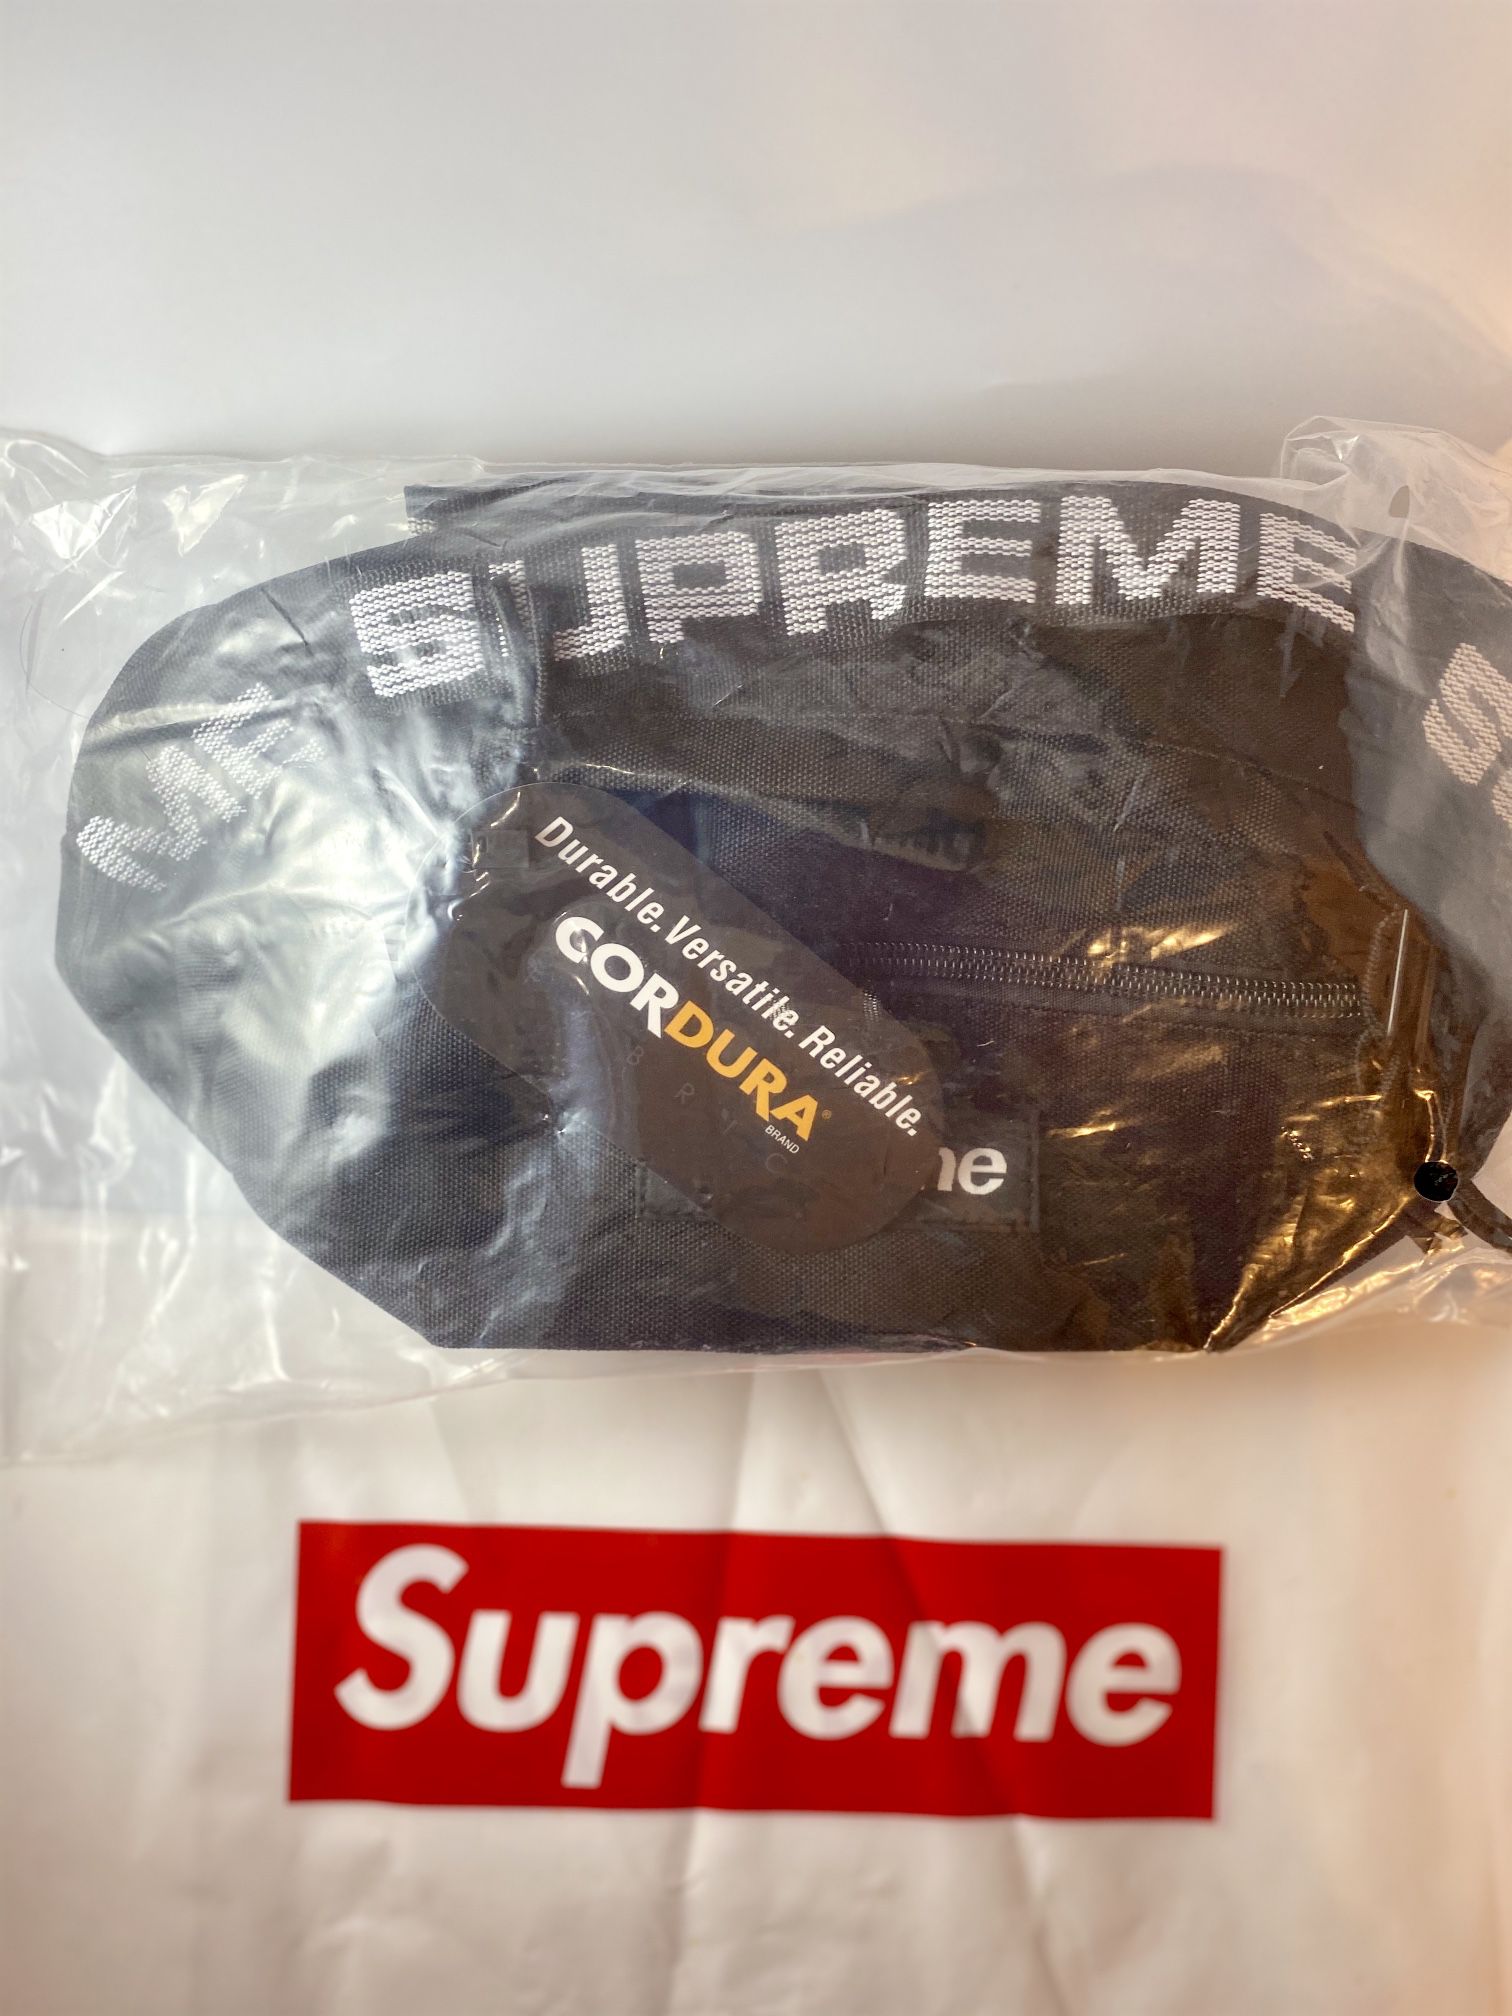 Supreme Waist Bags Brand New 